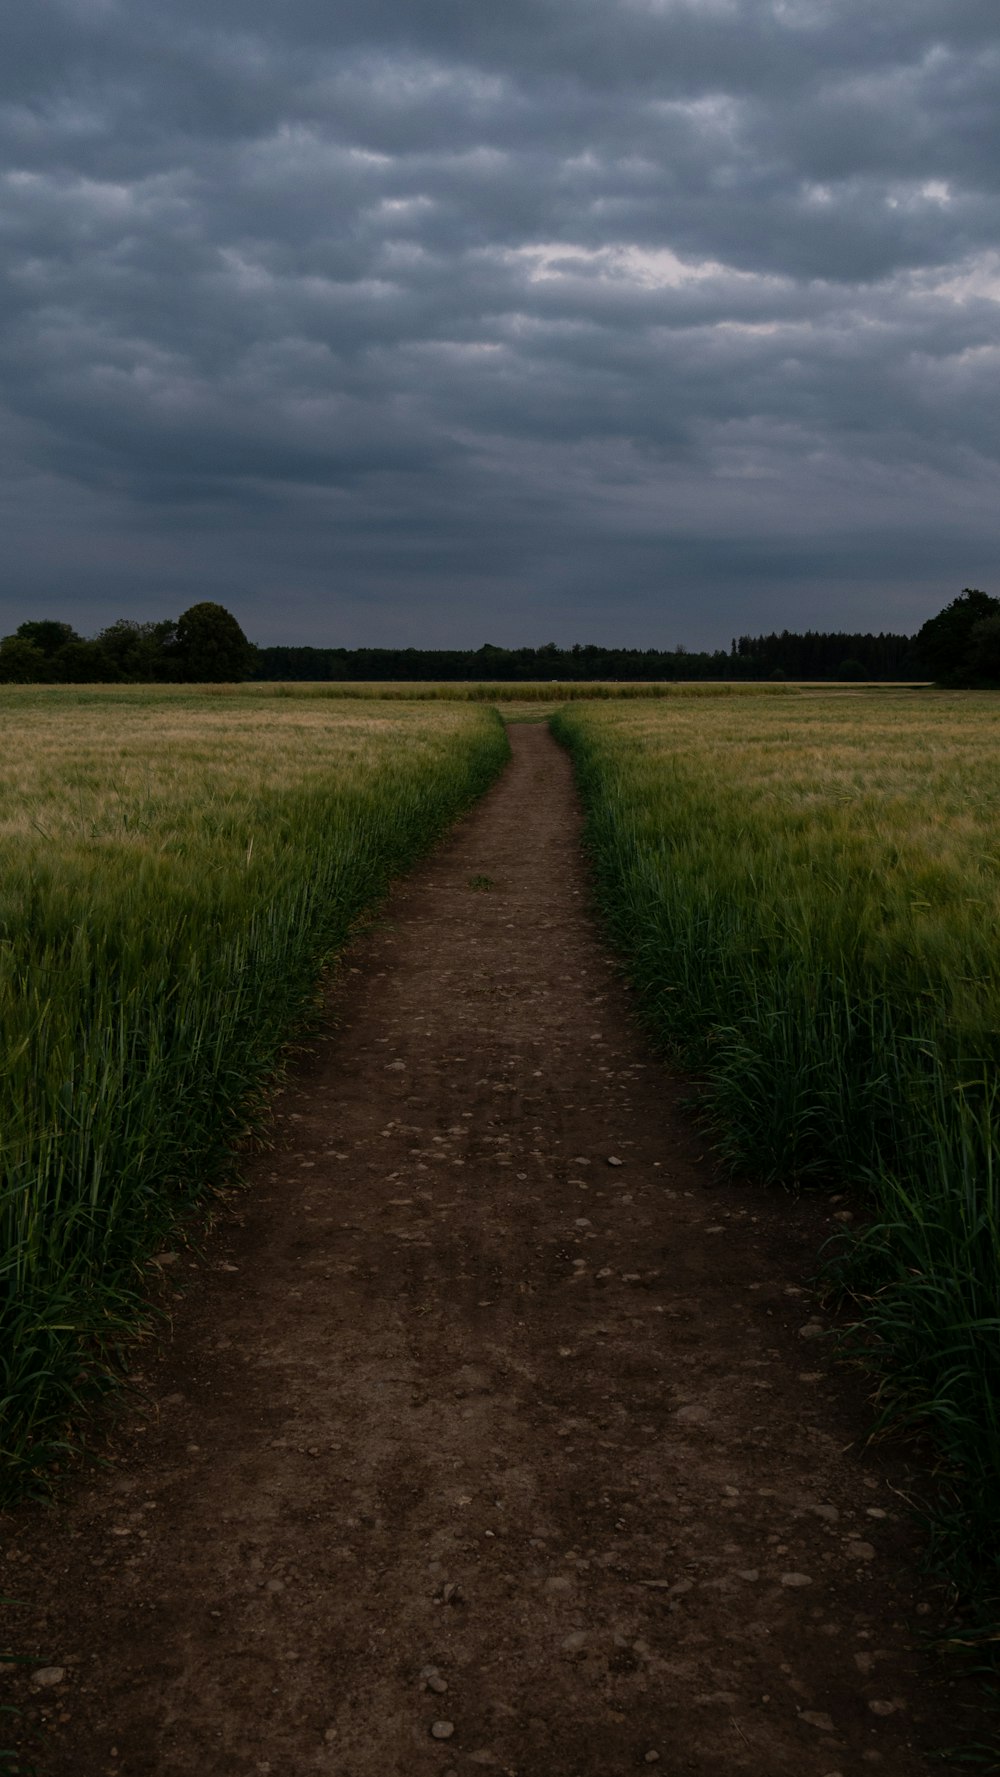 caminho estreito entre o campo de trigo